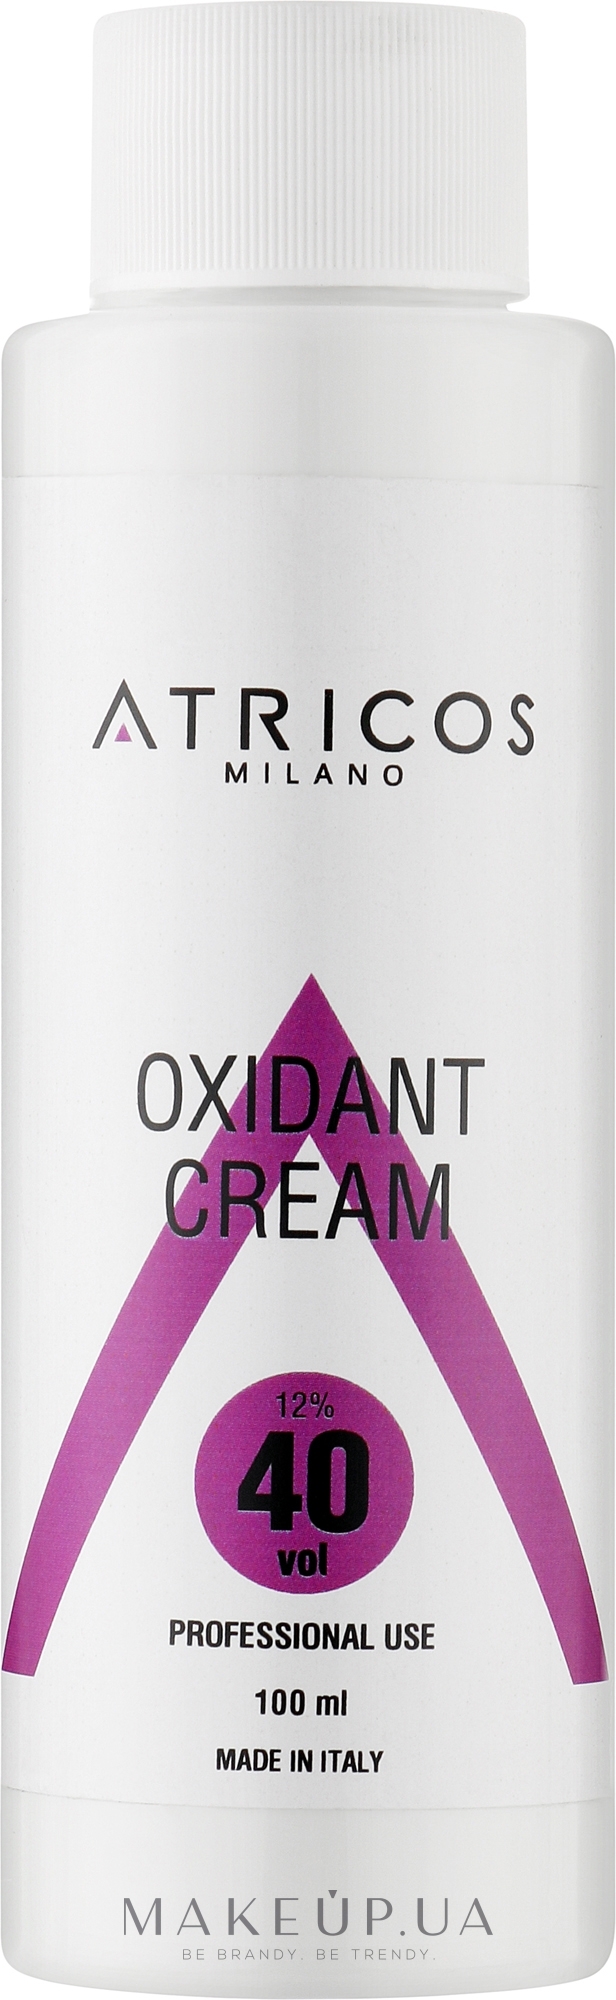 Оксидант-крем для фарбування та освітлення пасом - Atricos Oxidant Cream 40 Vol 12% — фото 100ml